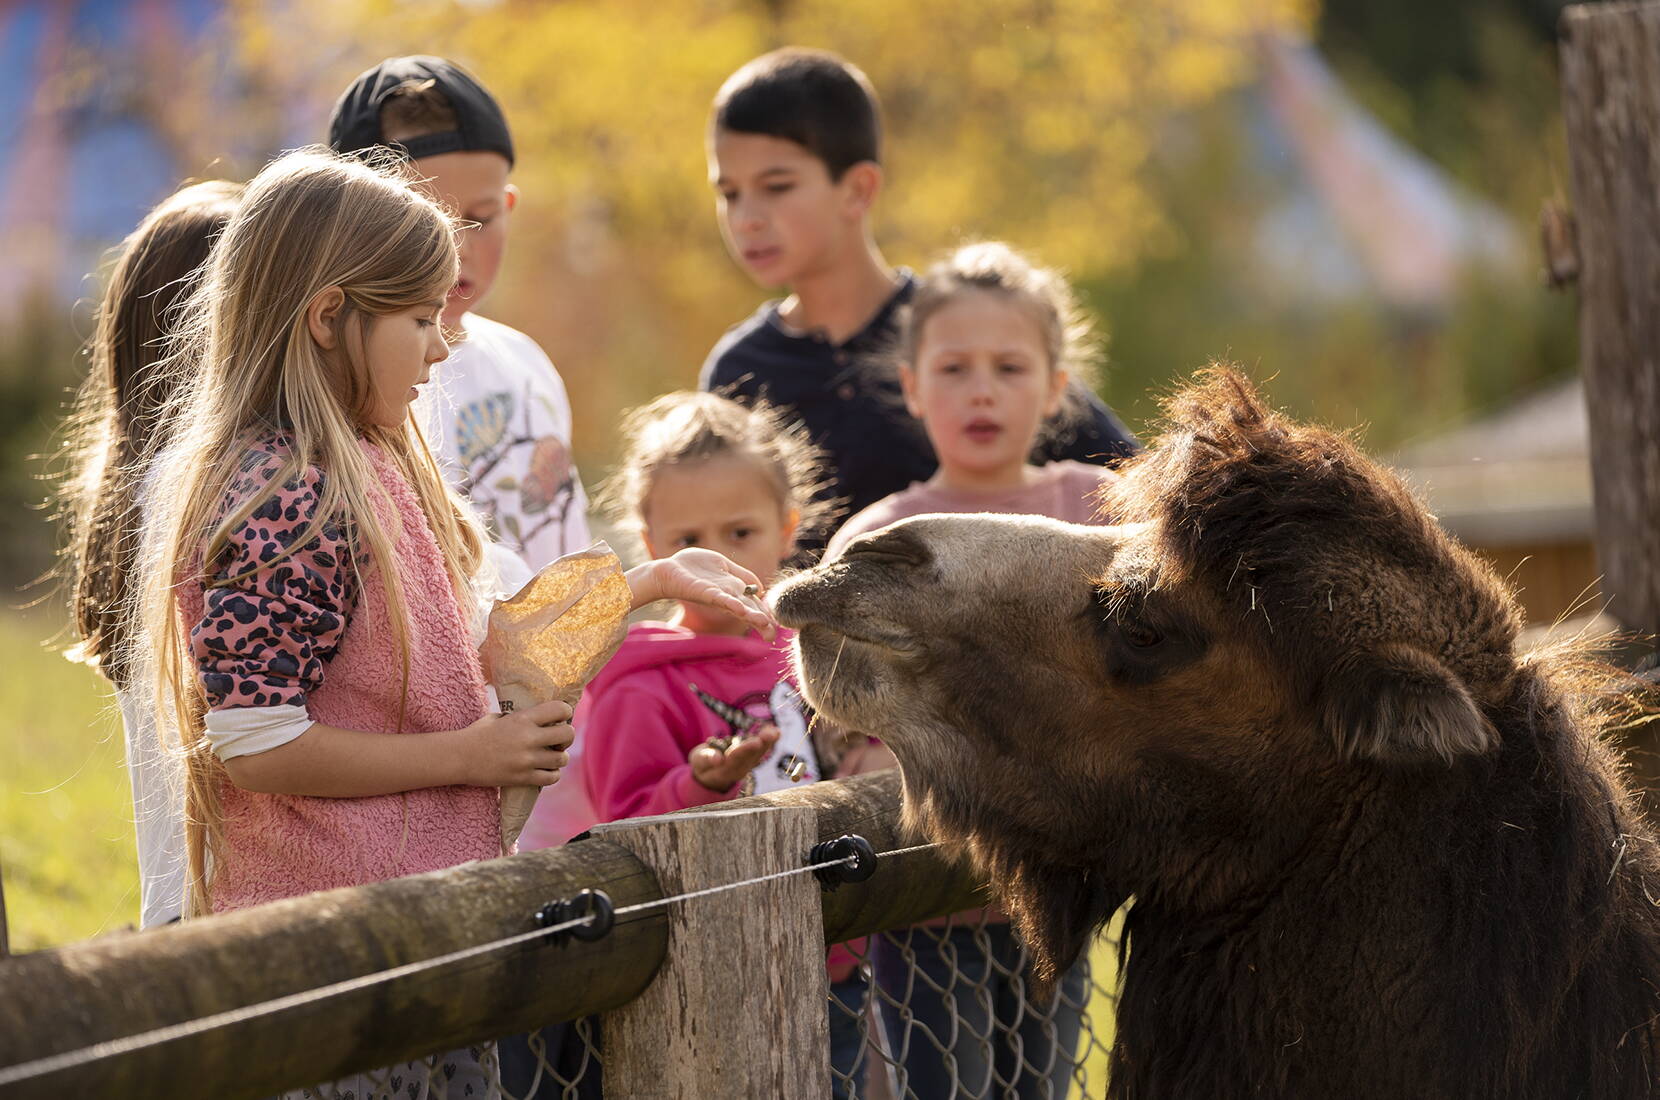 Auf dem Bild ist eine Gruppe Kinder zu sehen, die im Walter Zoo ein Trampeltier füttern.